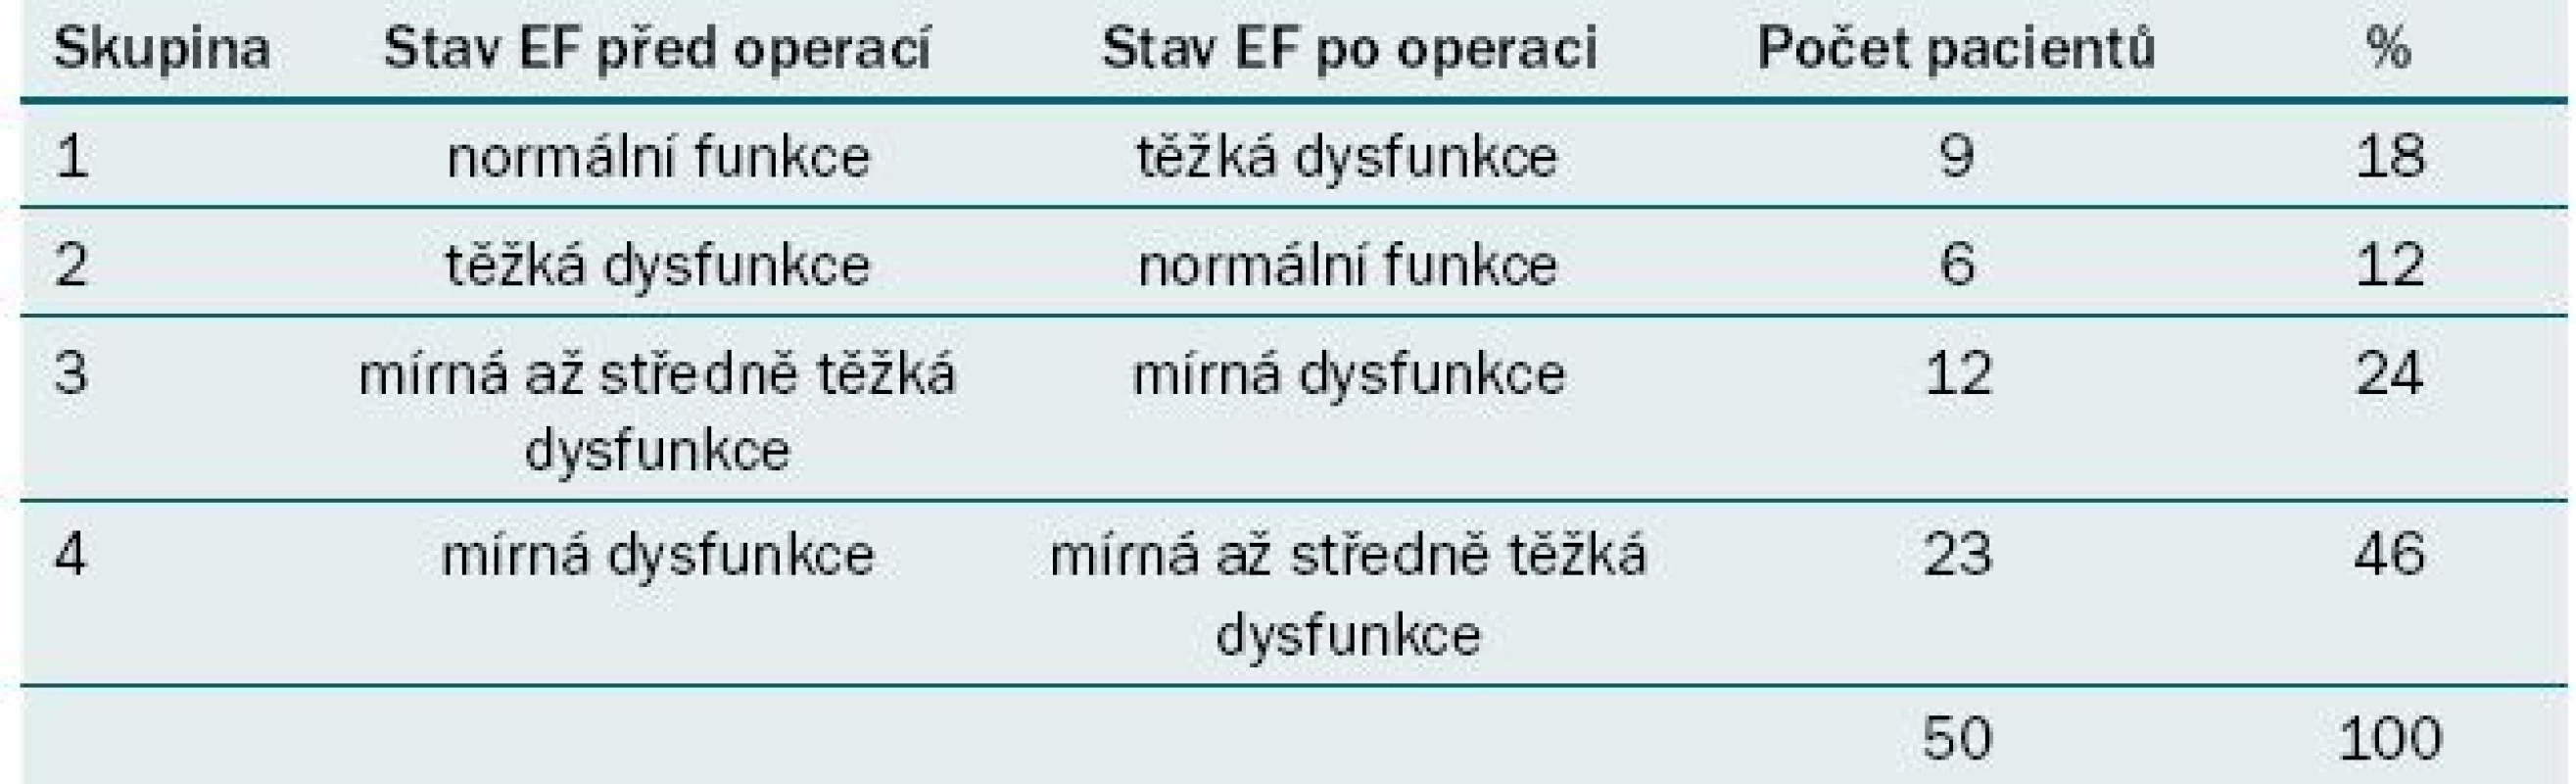 Přehled skupin, stav EF před a po operaci, počet pacientů.